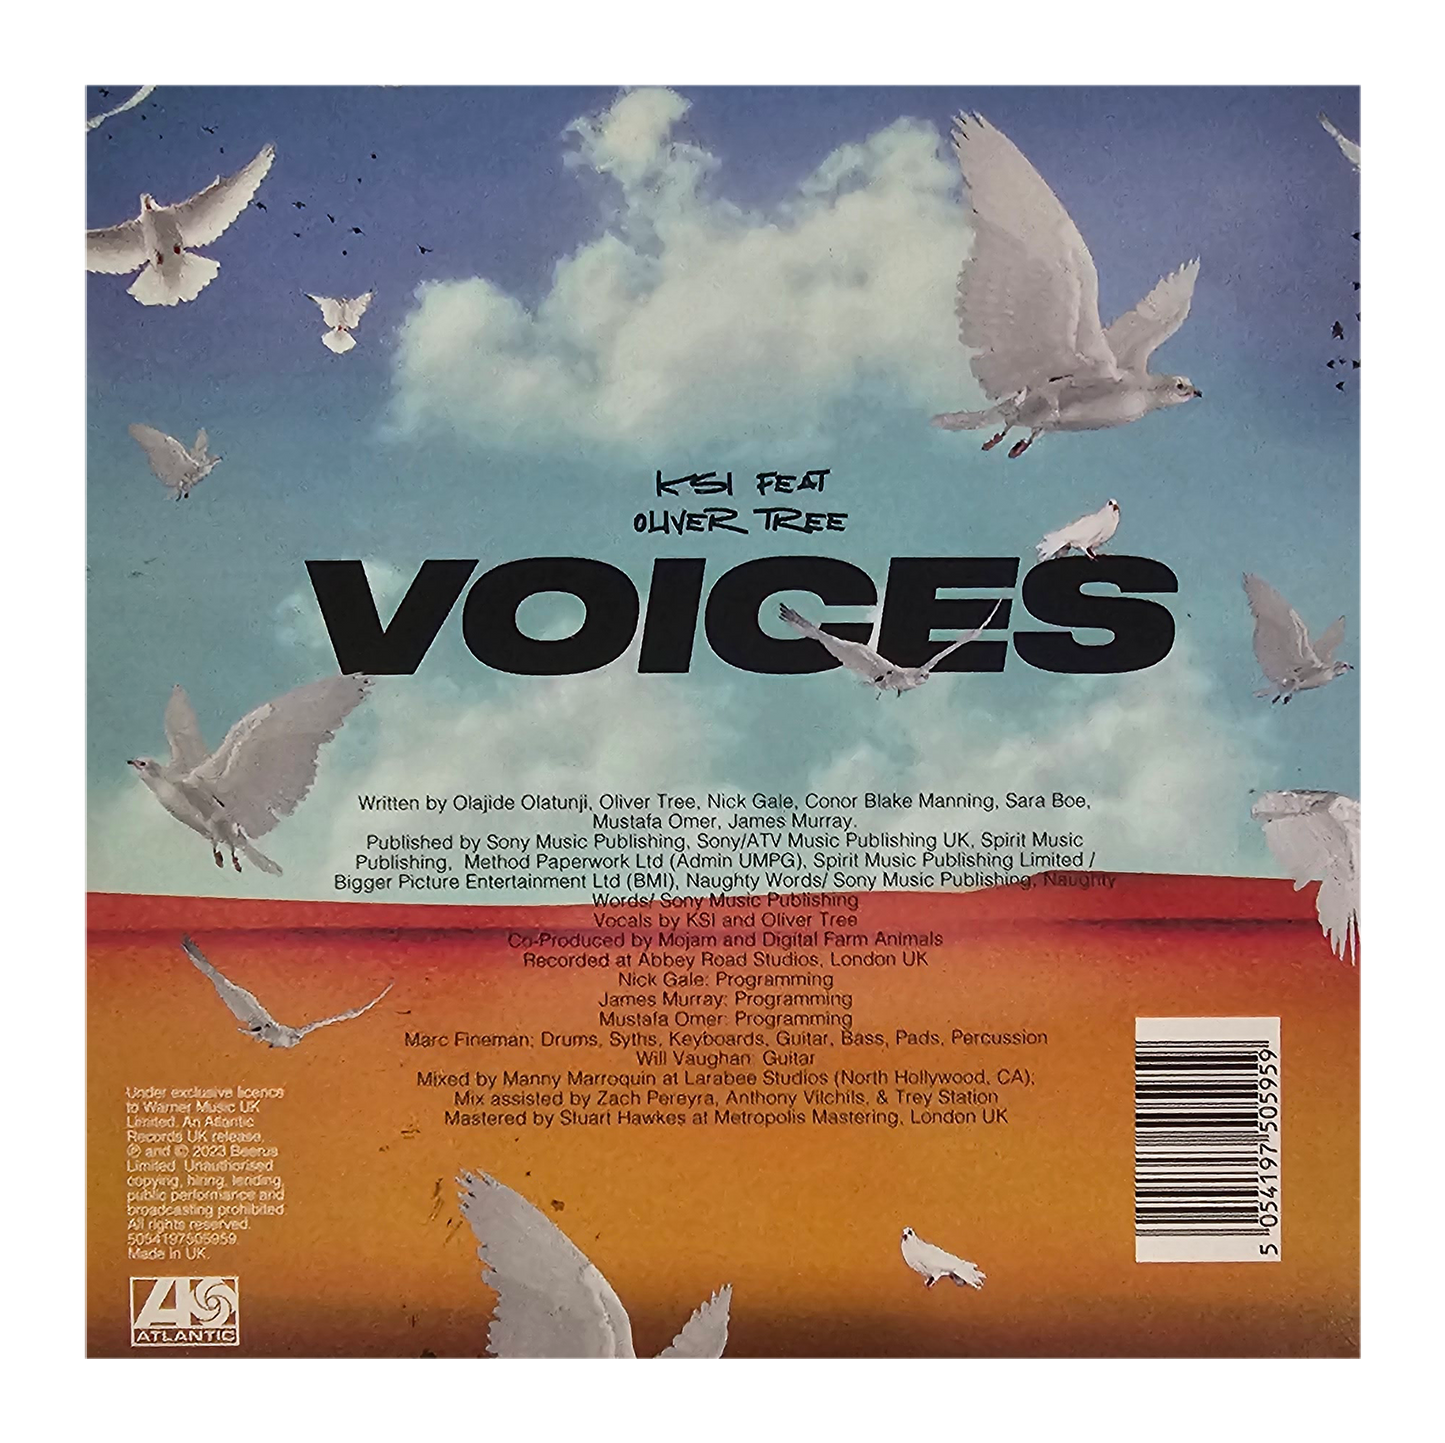 KSI (Voices)